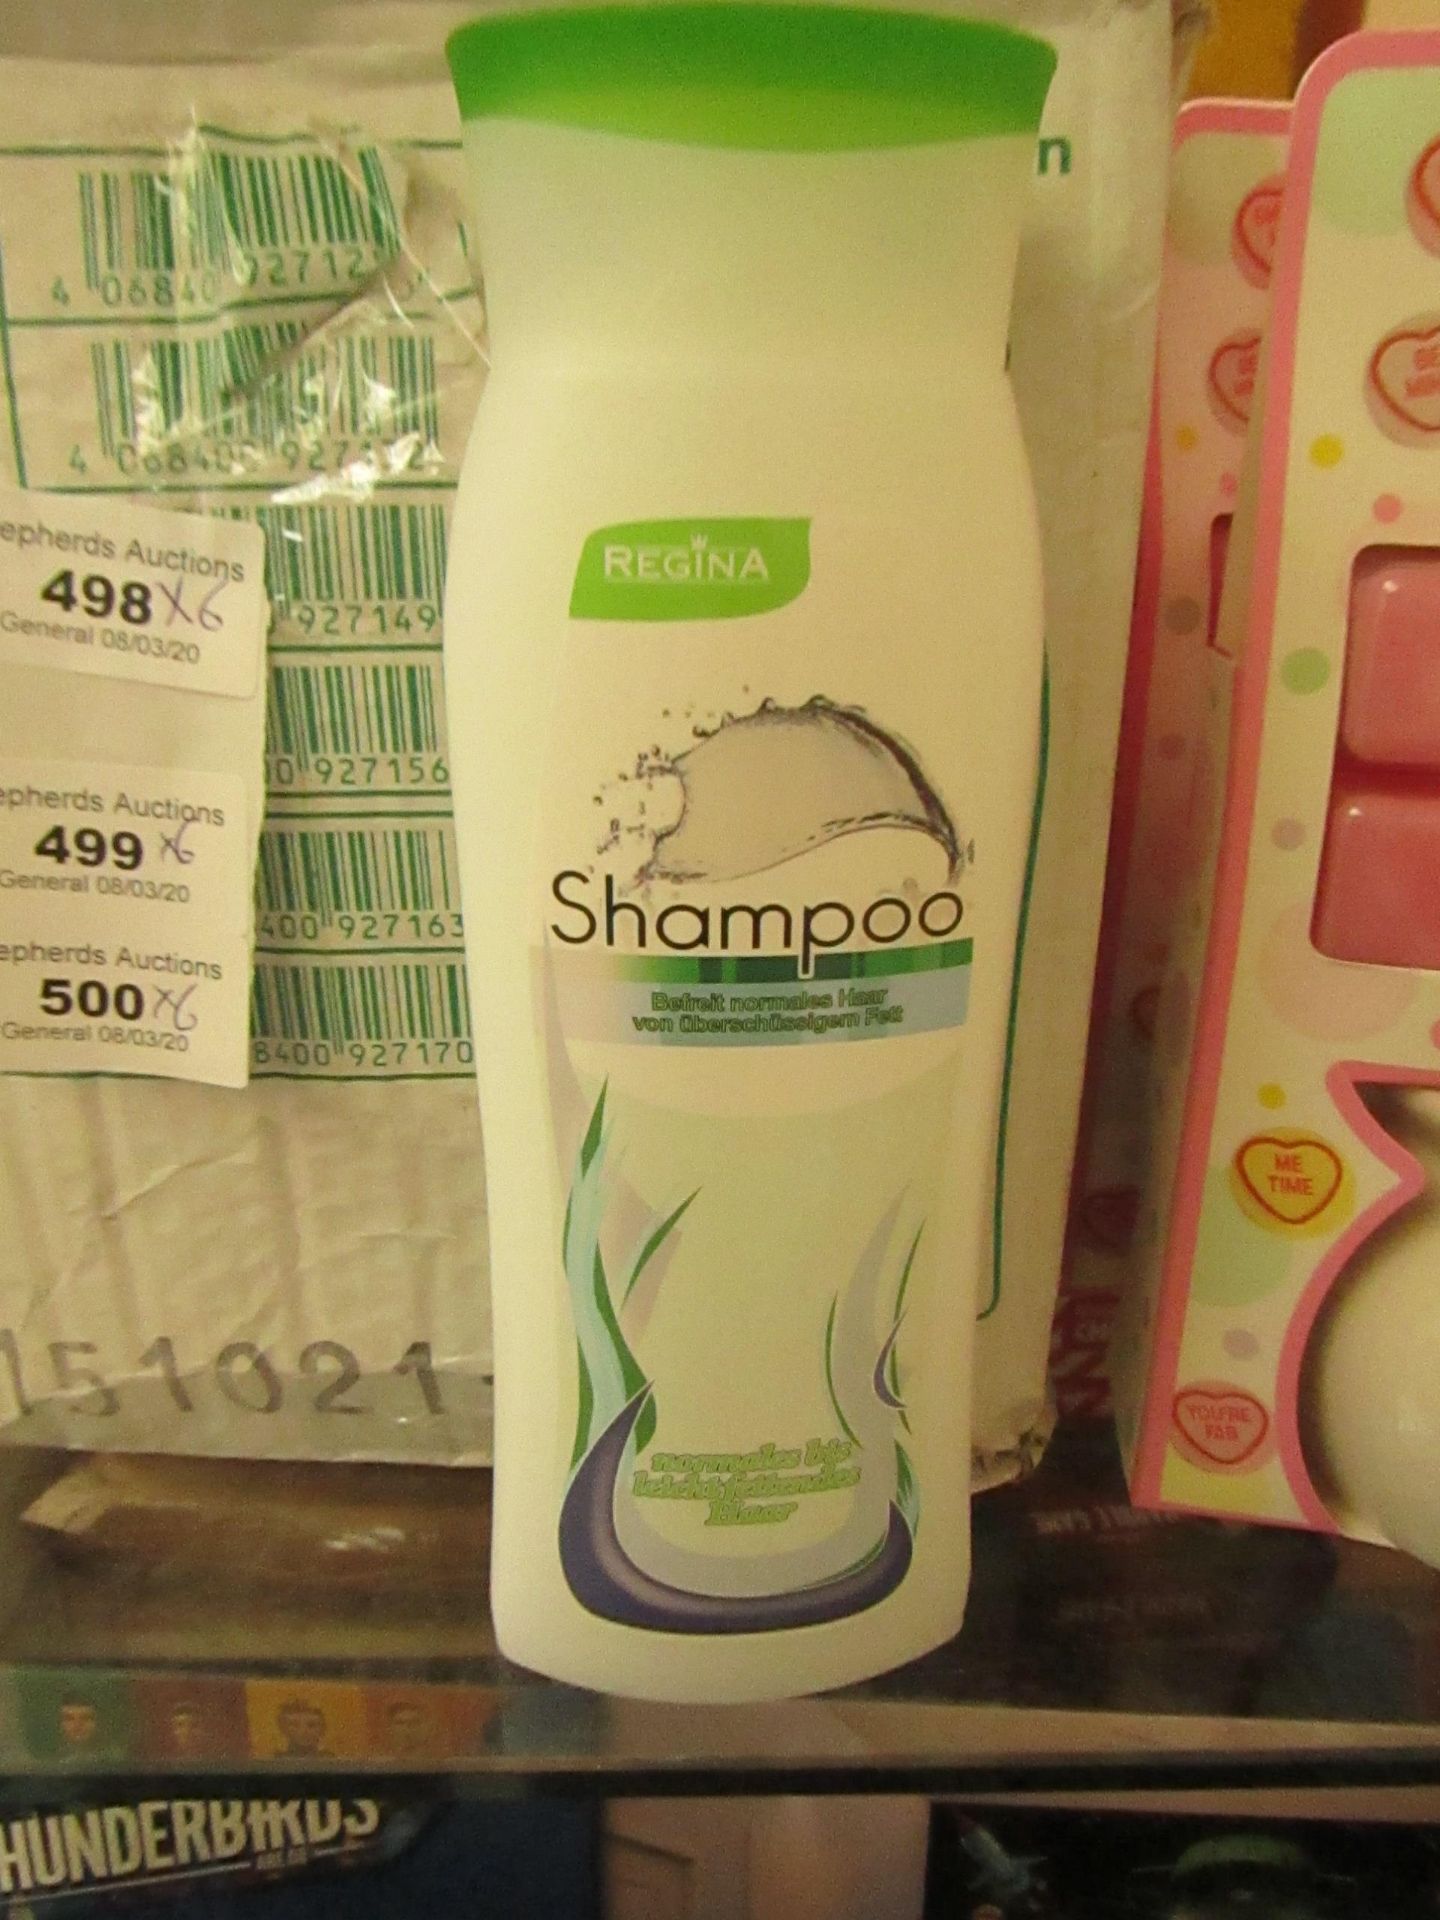 6x Regina - Shampoo - All New.